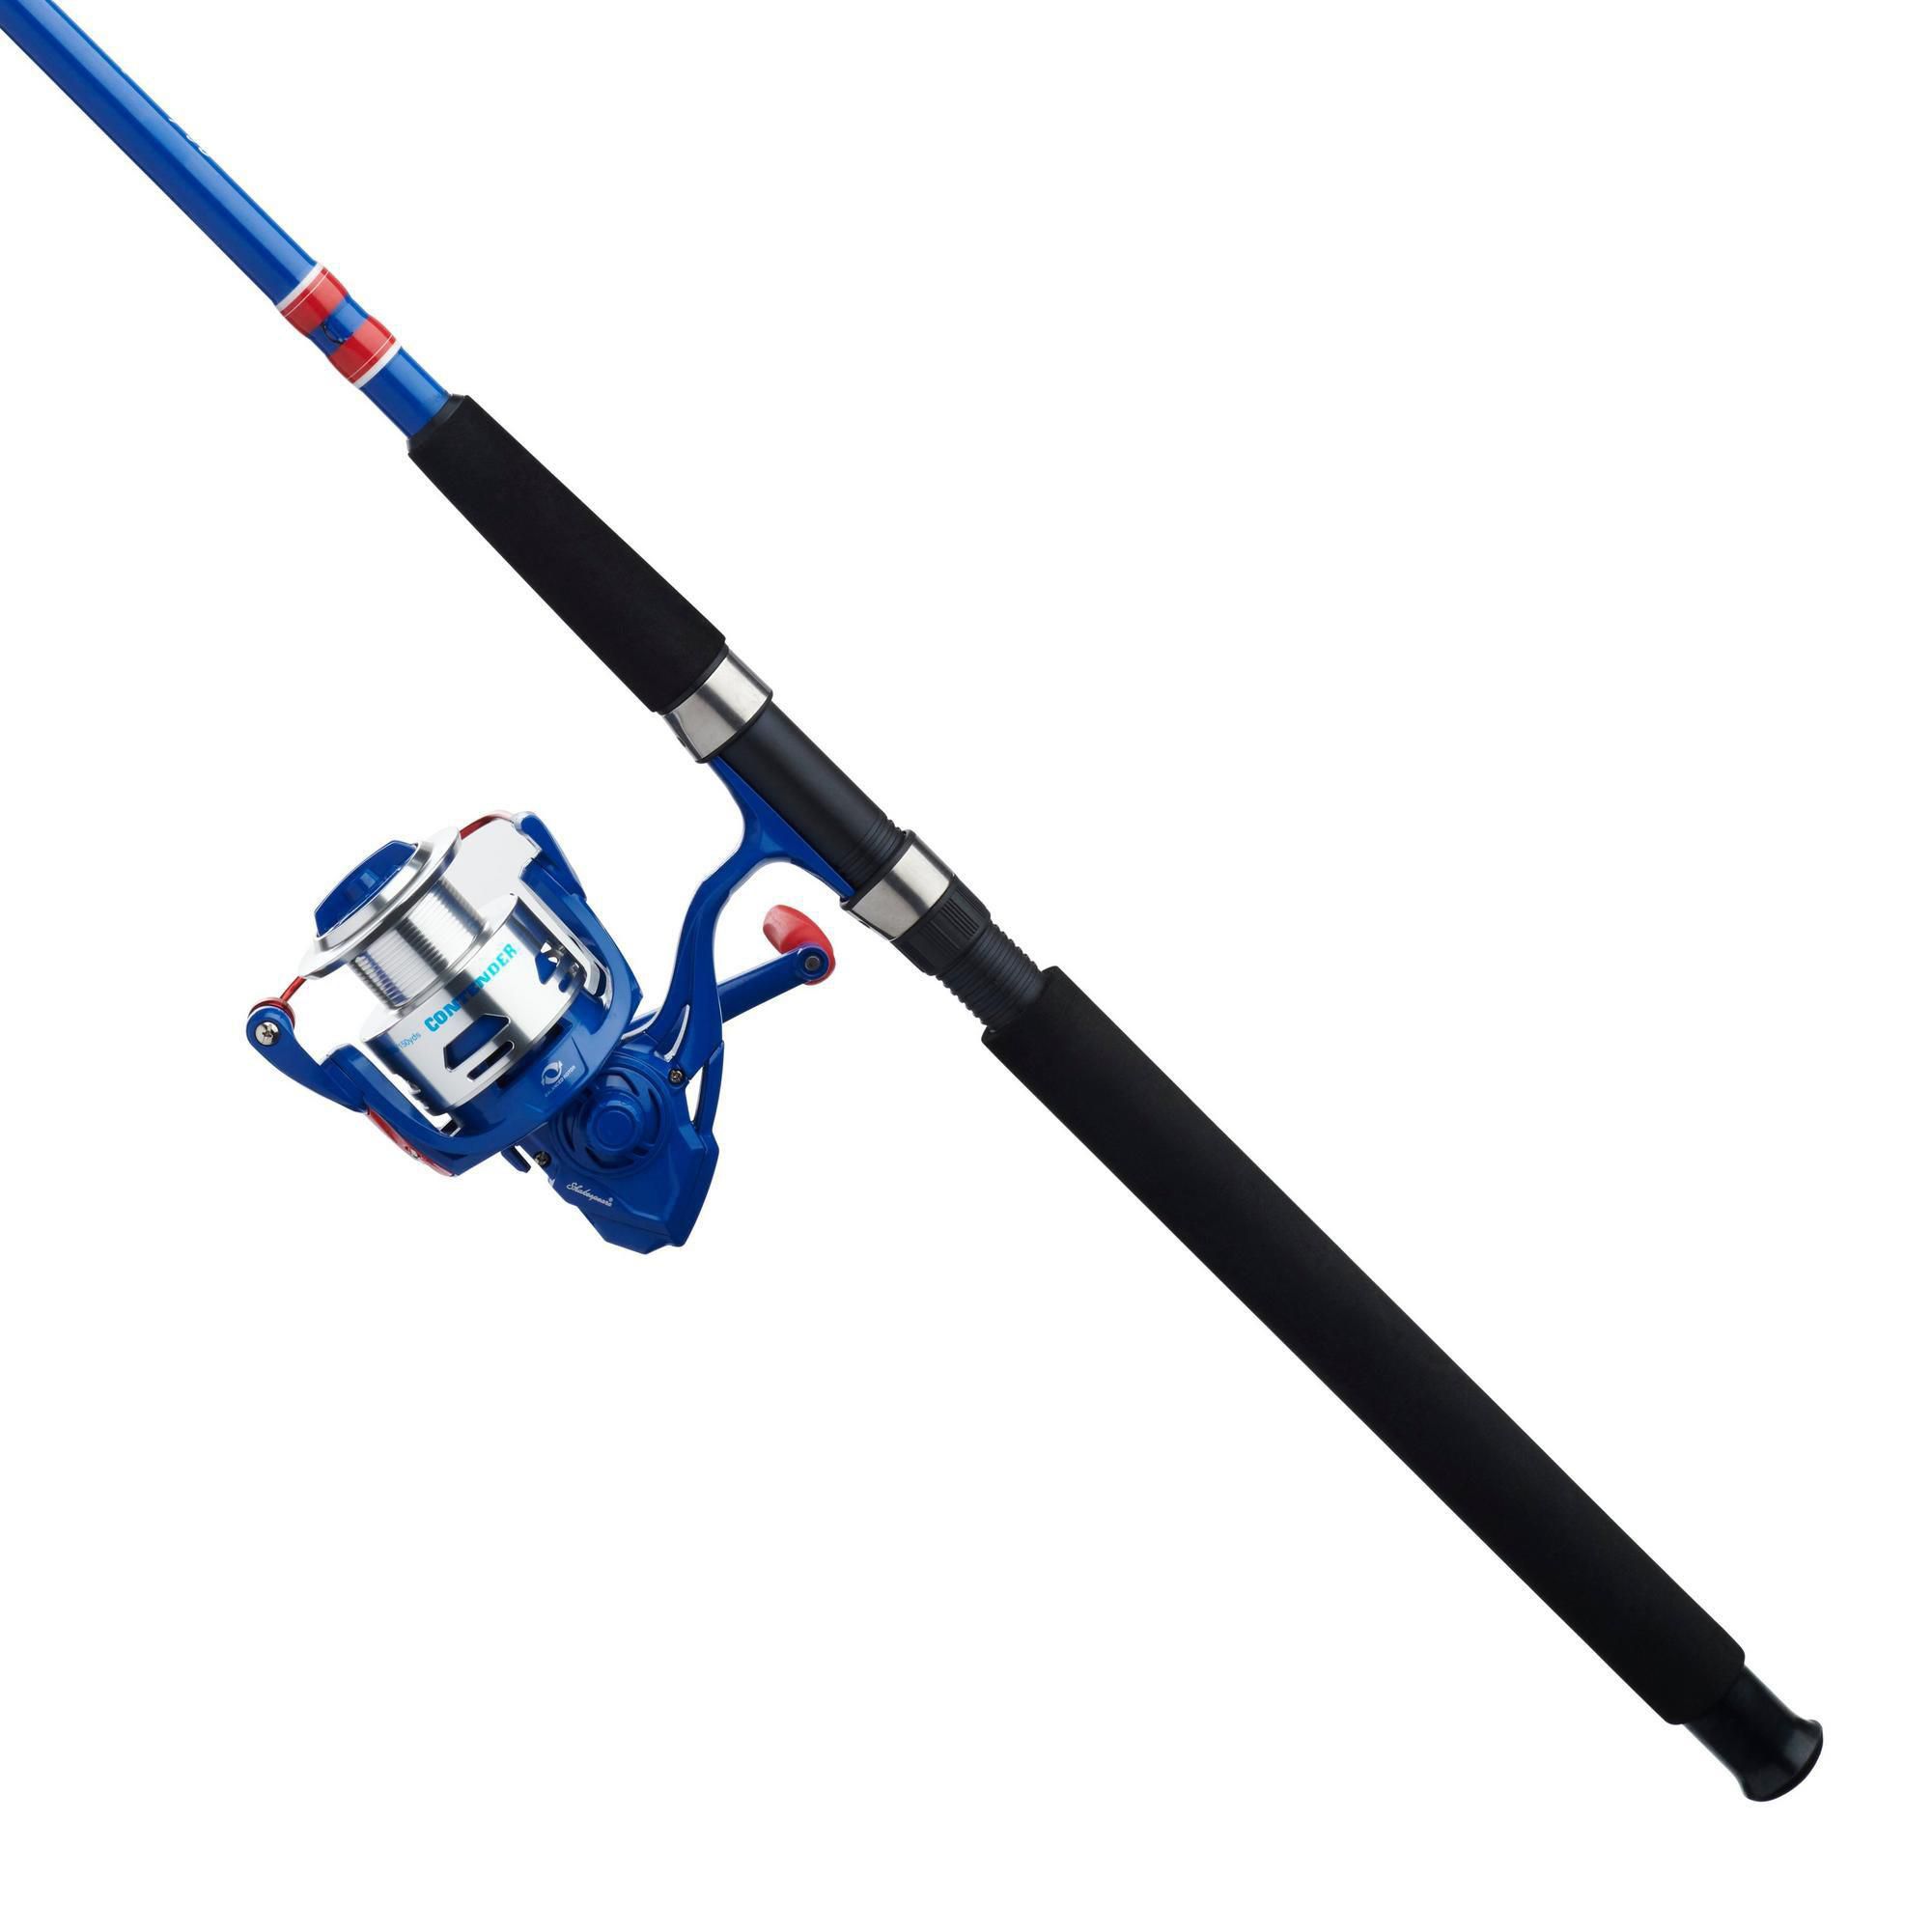 Fingerhut - Abu Garcia Max X Baitcast RH/LH 6'6 Fishing Rod and